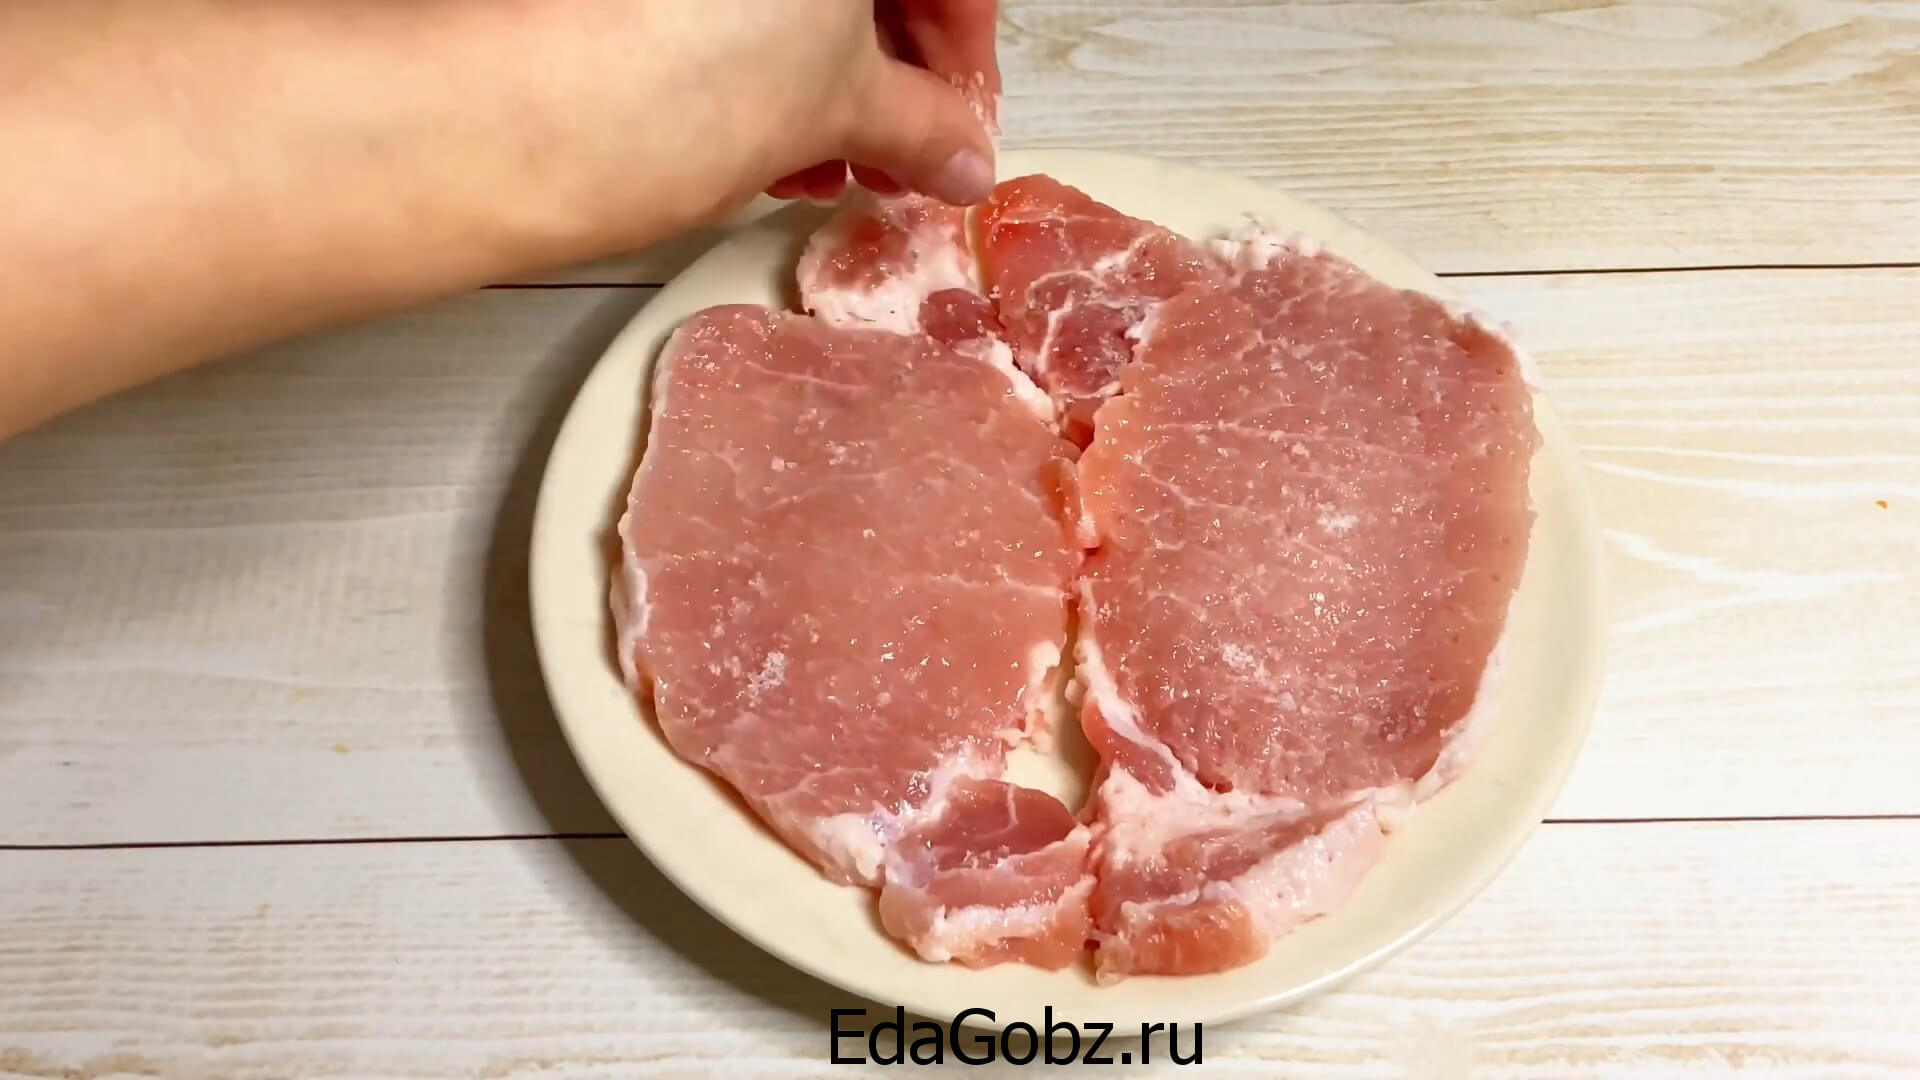 фото приготовления мяса